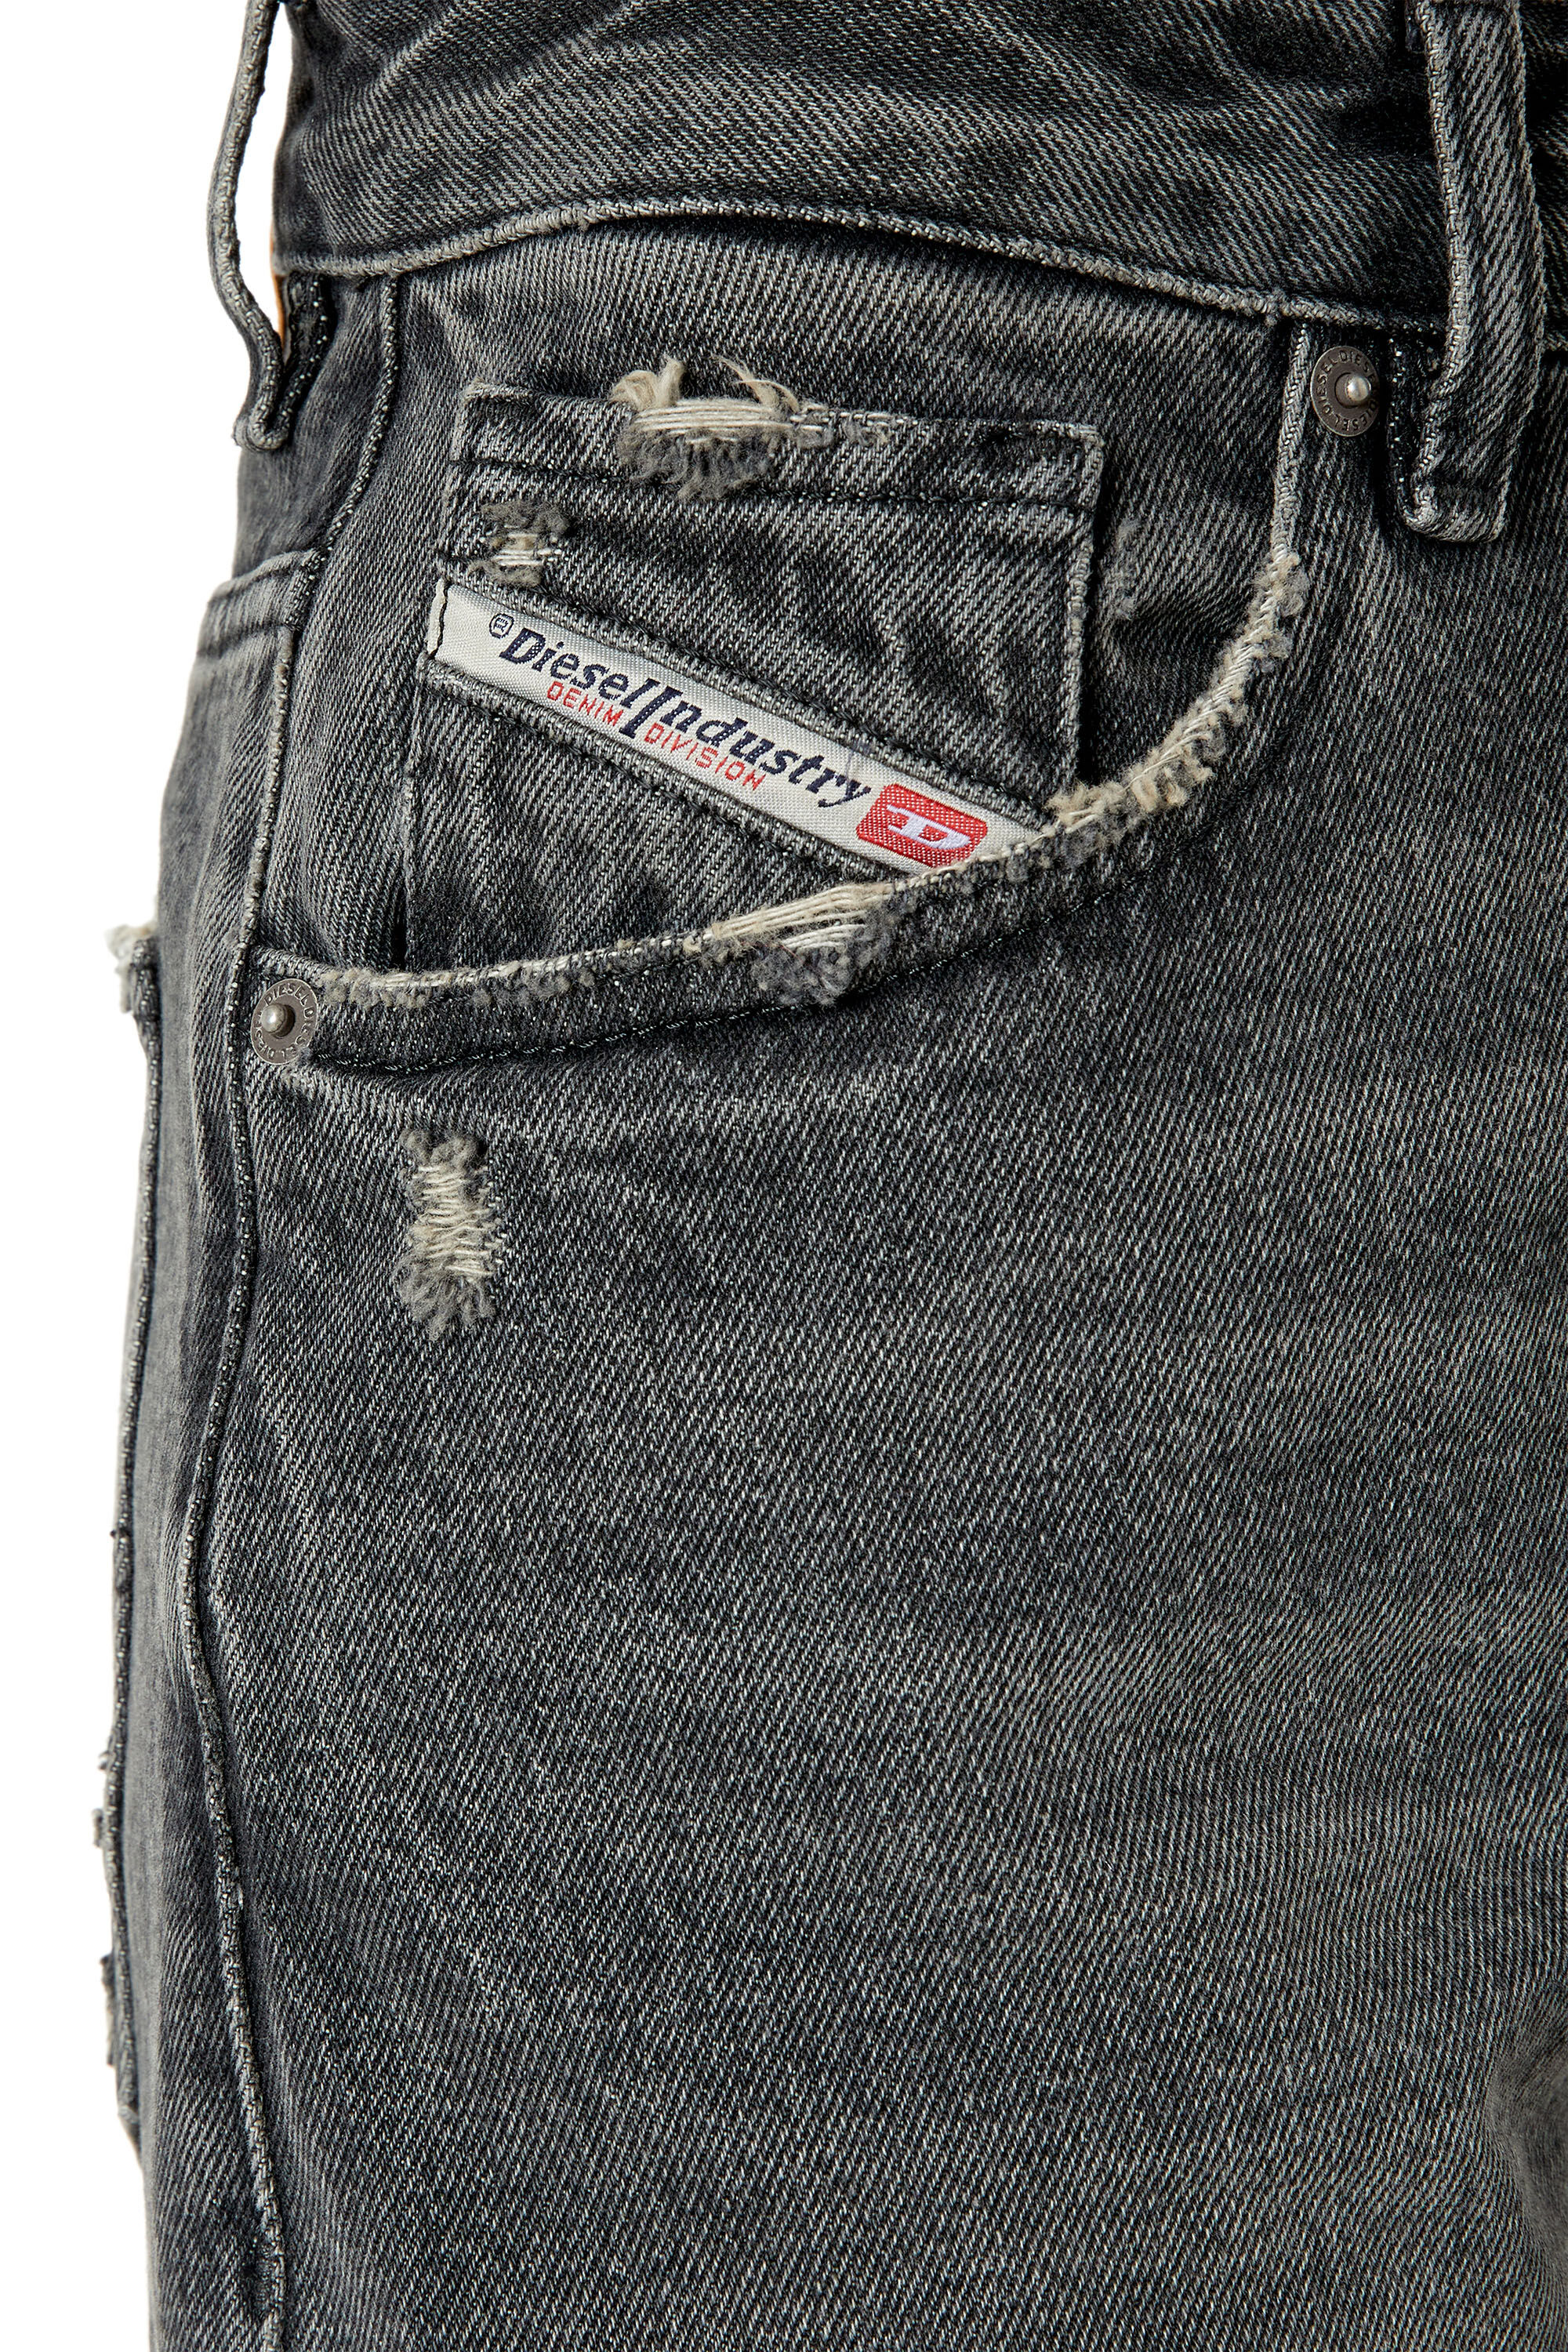 Diesel - Straight Jeans 1999 D-Reggy 007K8, Black/Dark grey - Image 4